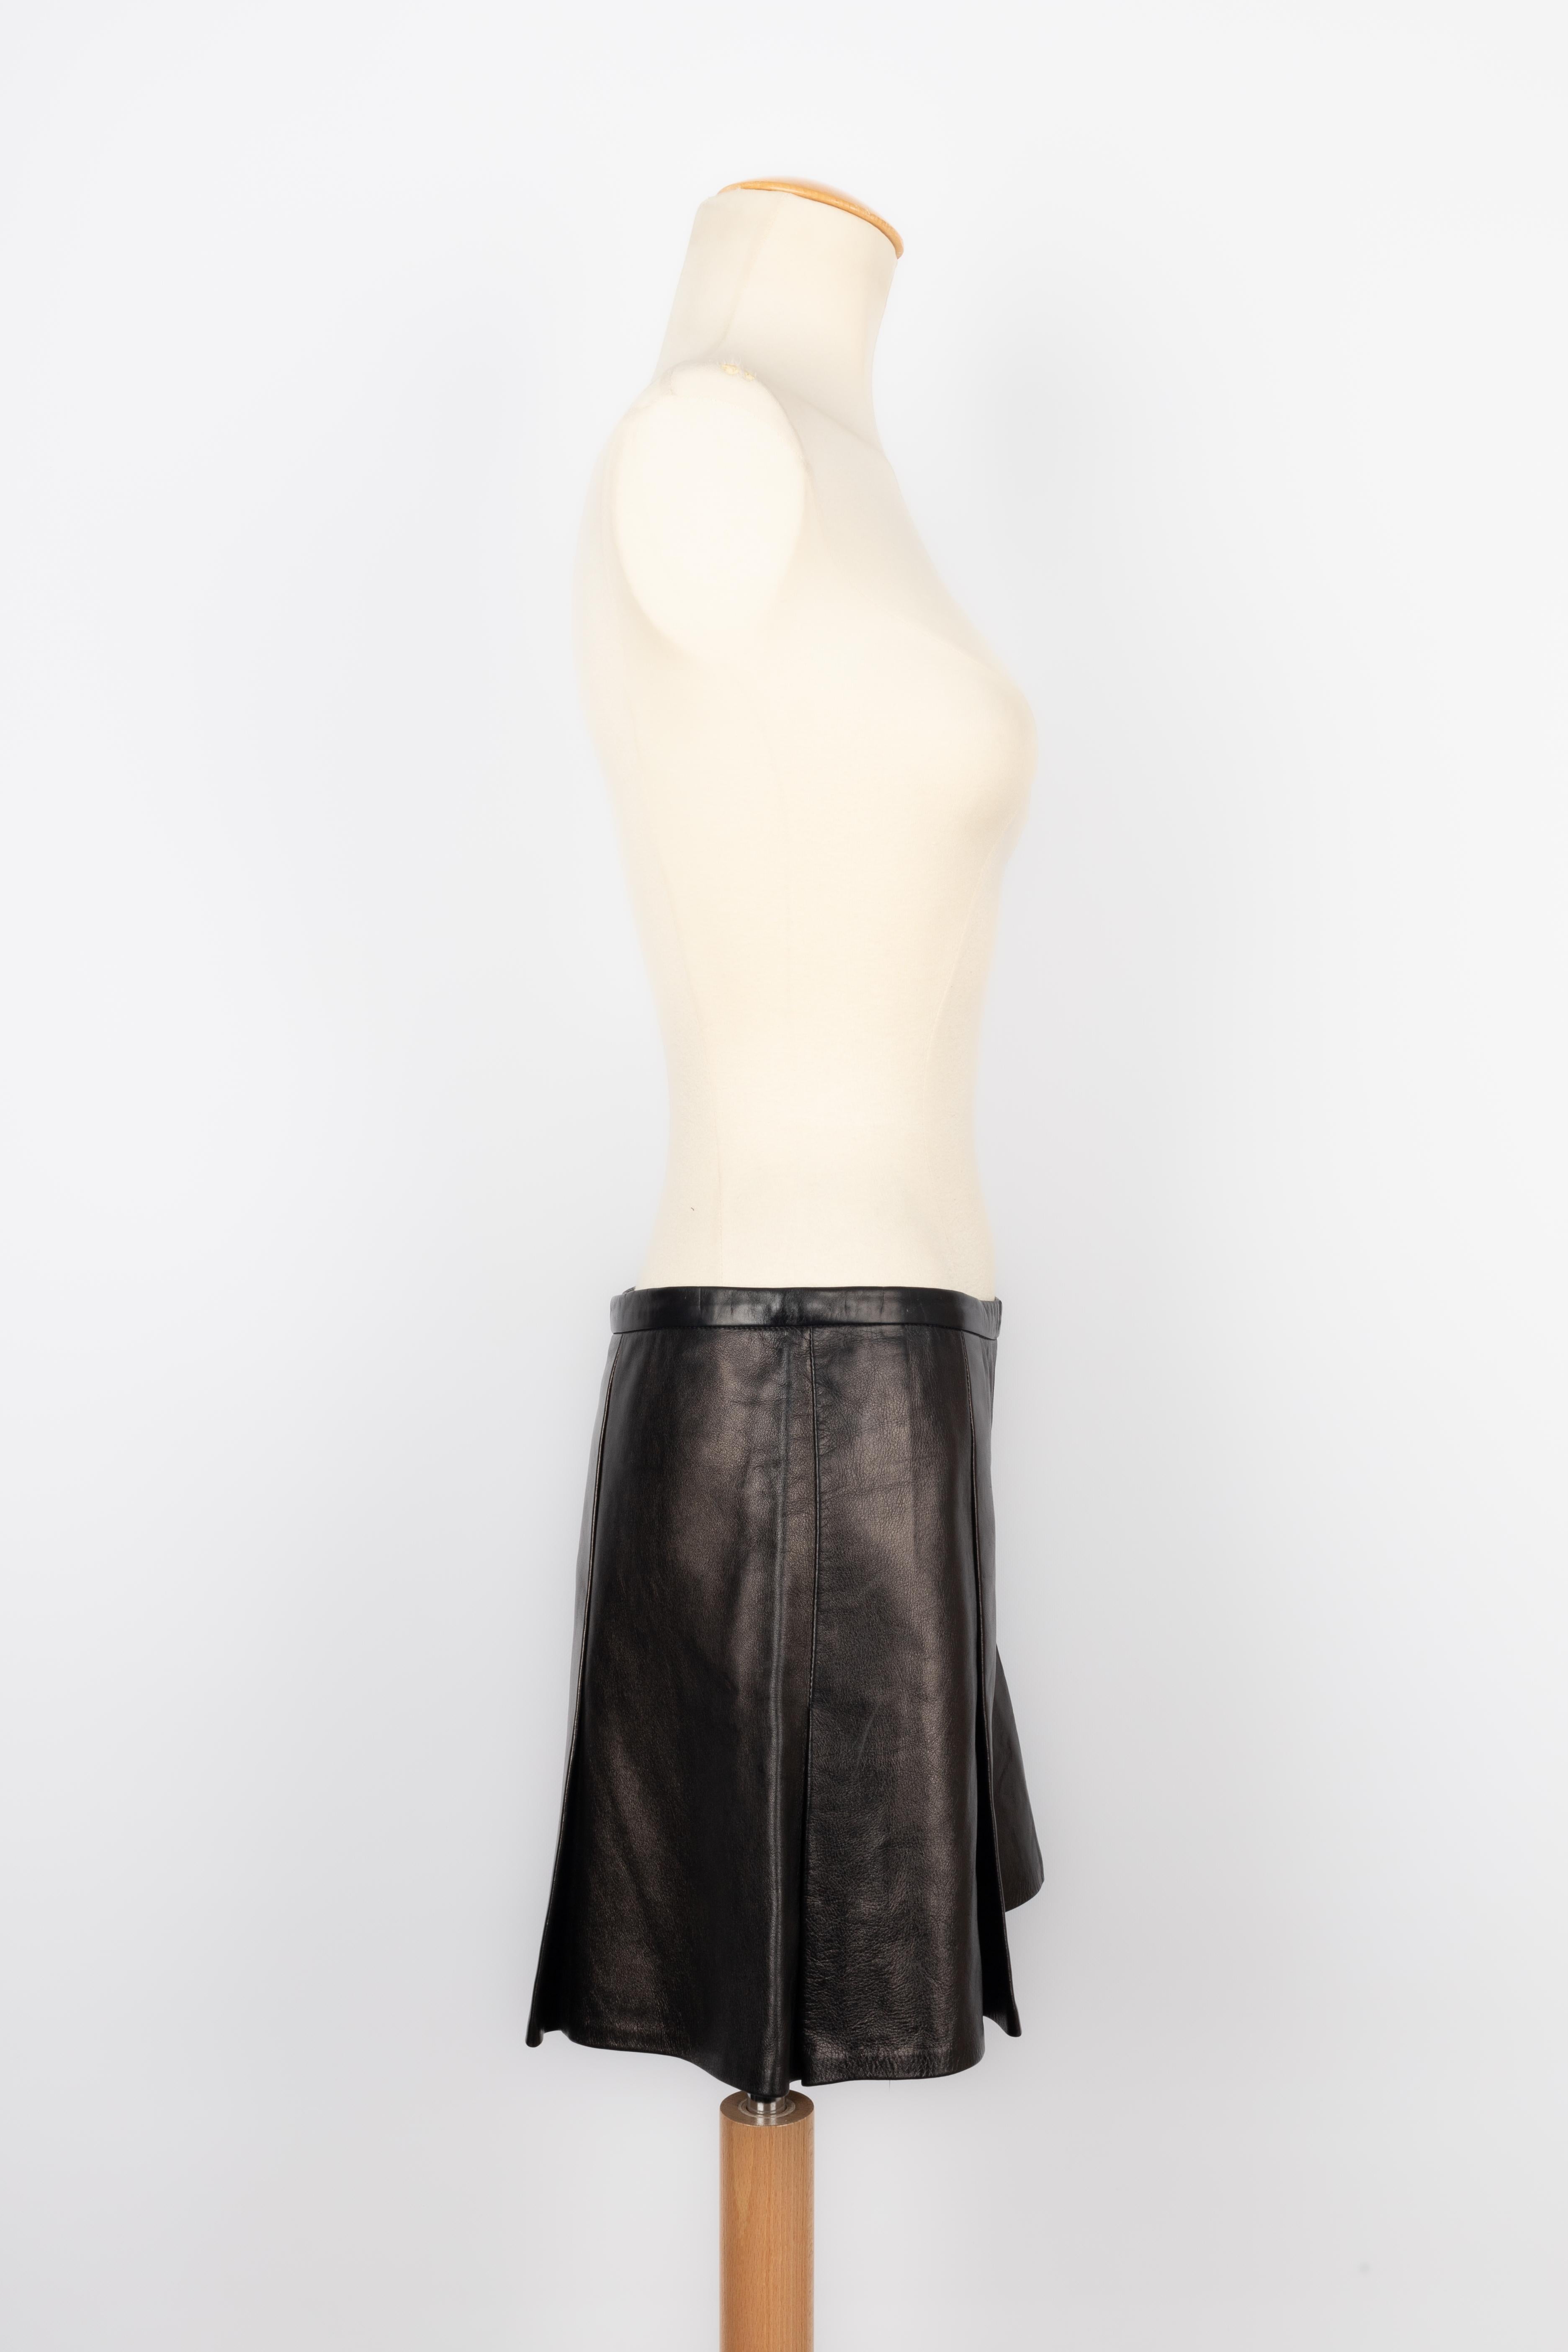 PUCCI - (Made in Italy) Schwarze Shorts aus Lammleder. Größe 38FR.

Bedingung:
Sehr guter Zustand

Abmessungen:
Taille: 38 cm - Länge: 36 cm

FJ91